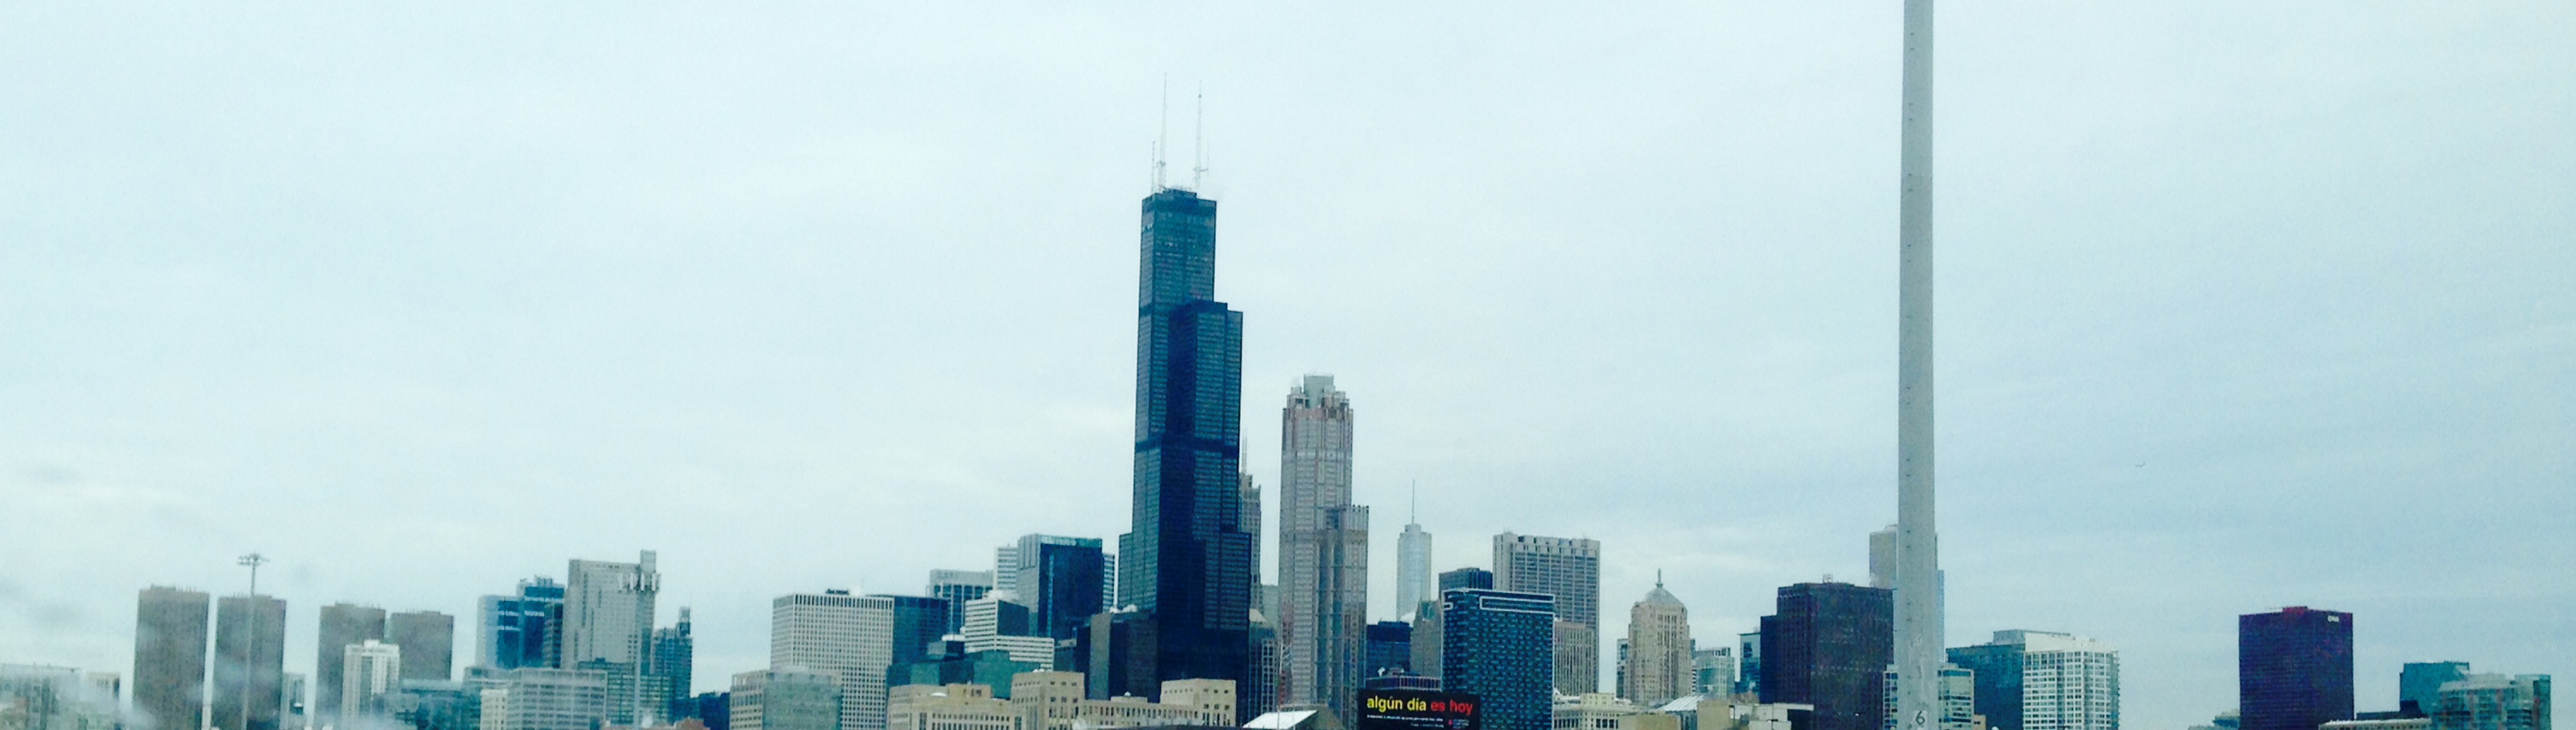 Chicago Sukhoy 2014